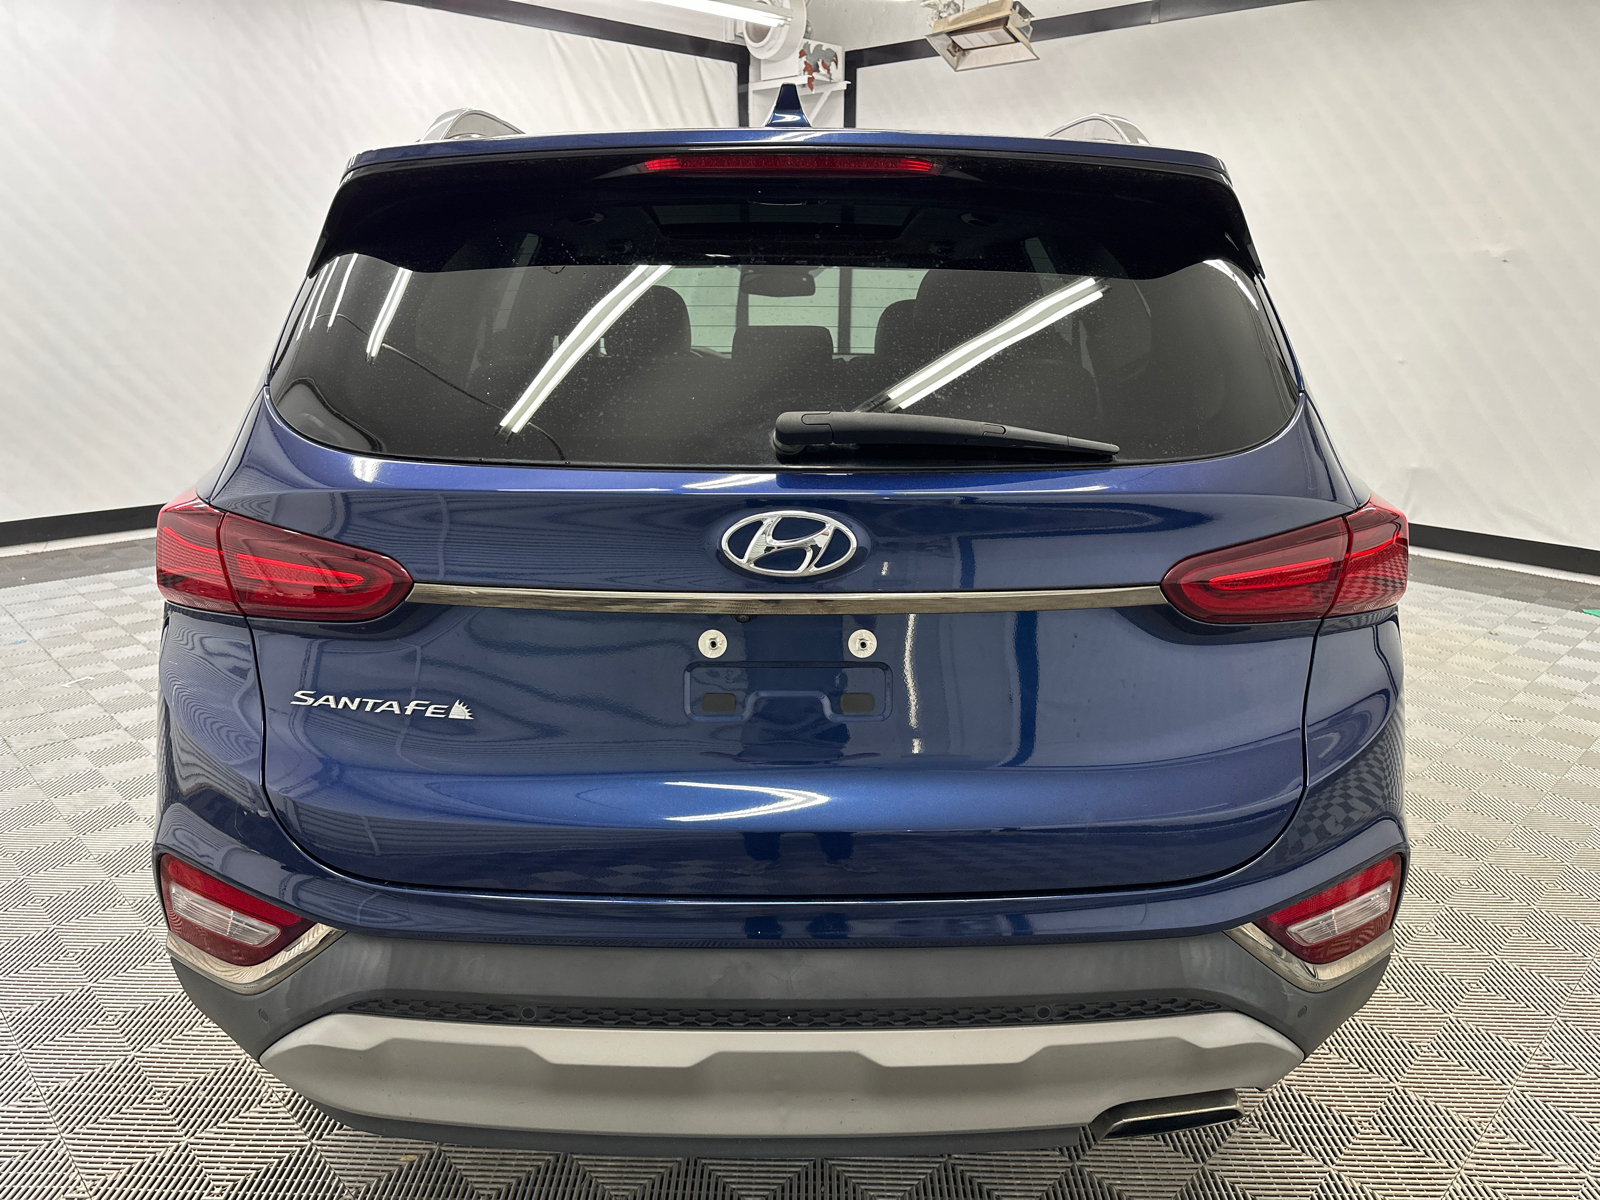 2020 Hyundai Santa Fe Limited 2.4 4